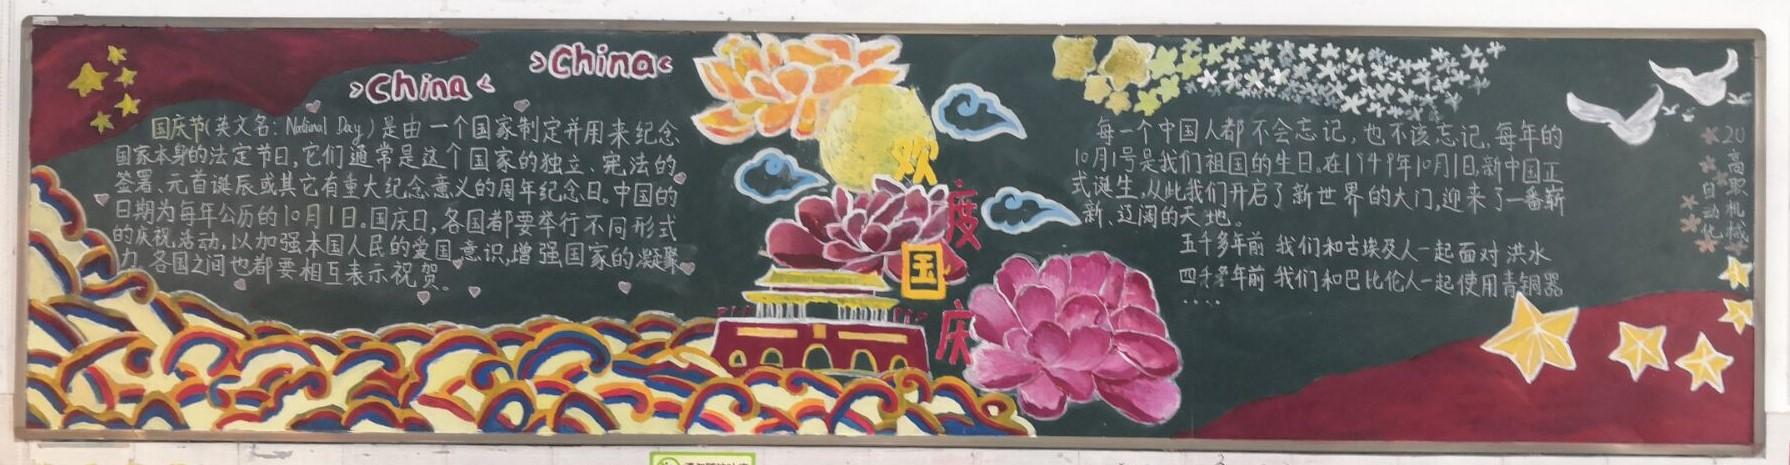 中国国花板报图片